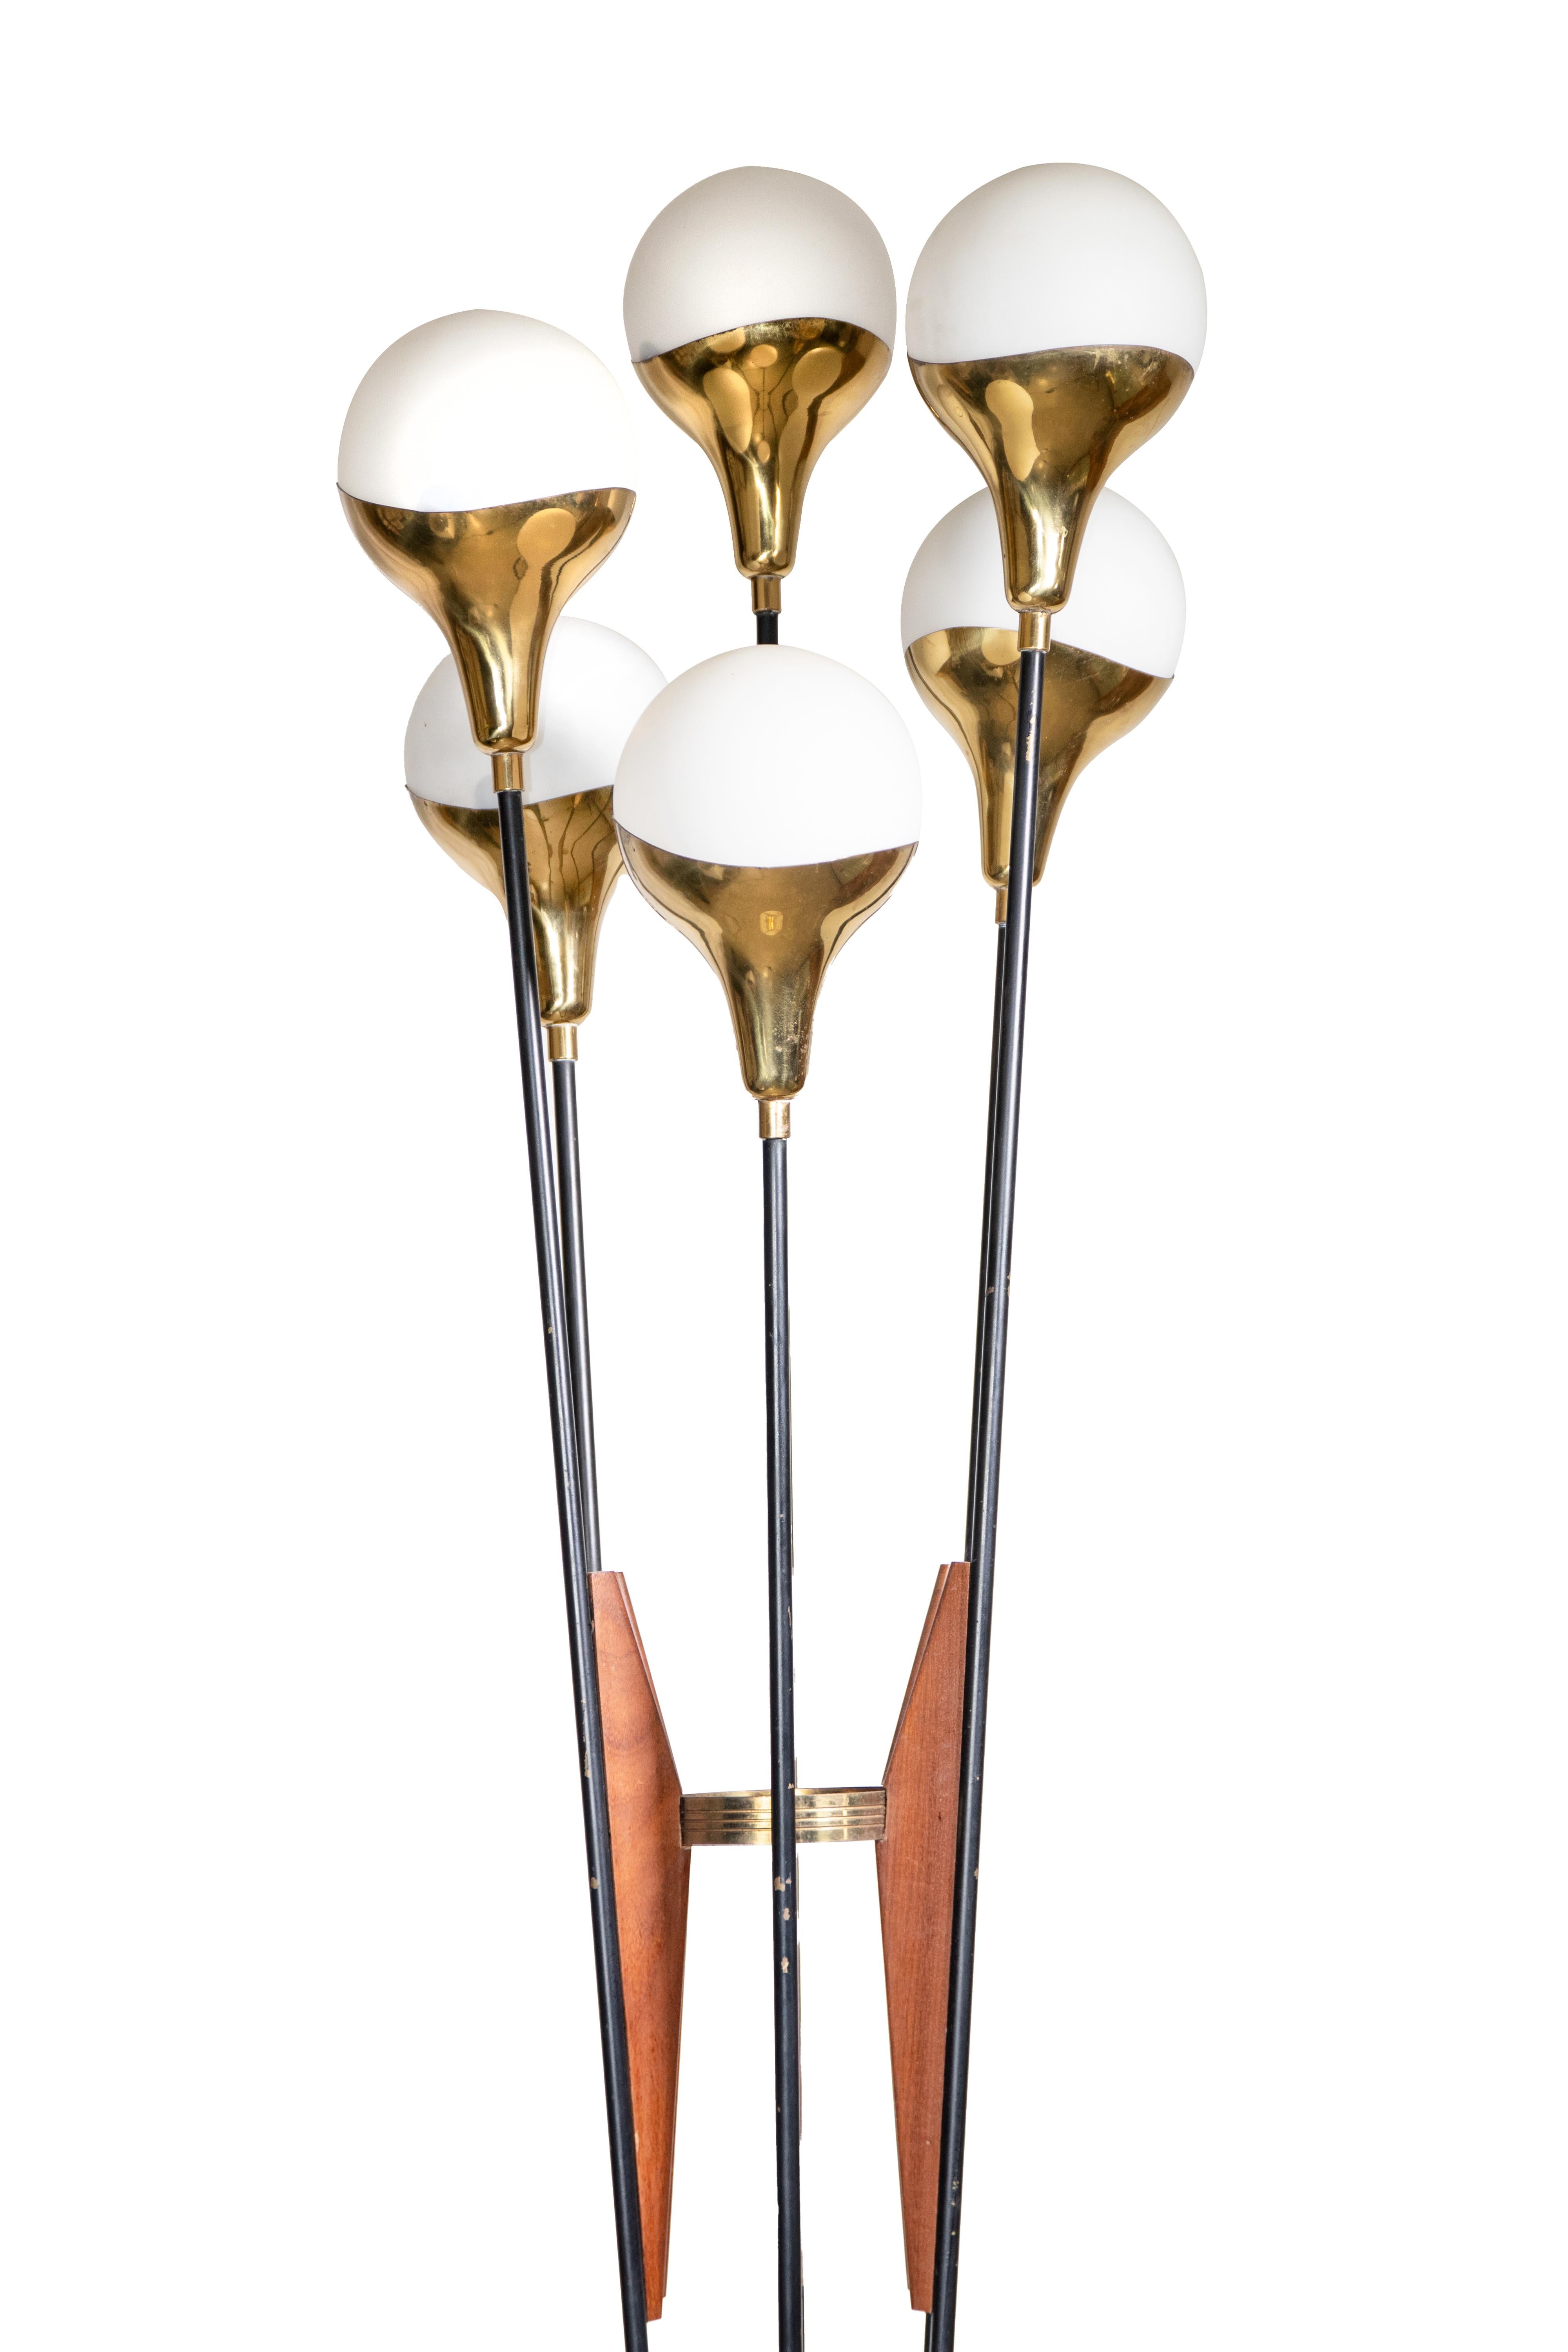 Le lampadaire Alberello Stil/One est une lampe originale conçue par Stilnovo dans les années 1960.

Lampadaire modèle iconique 